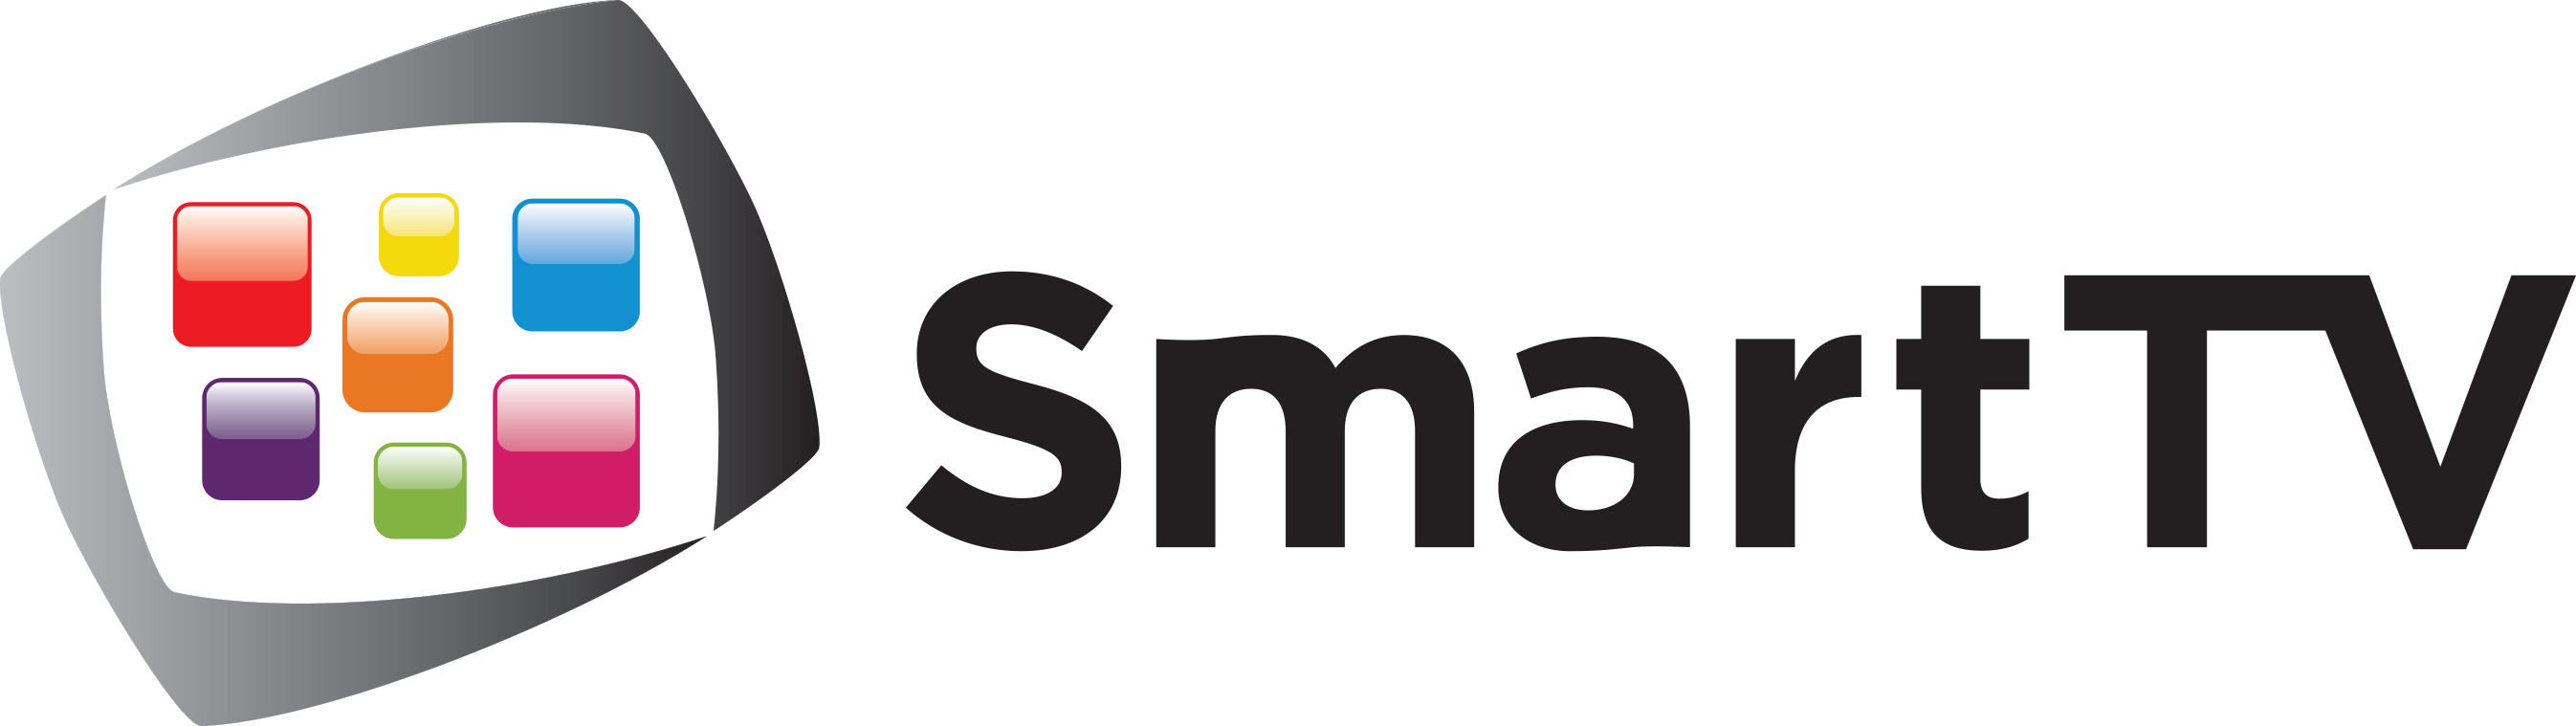 Тиксайн тв. Смарт ТВ. Smart TV иконка. Телевизор логотип. Значки Smart телевизоров.